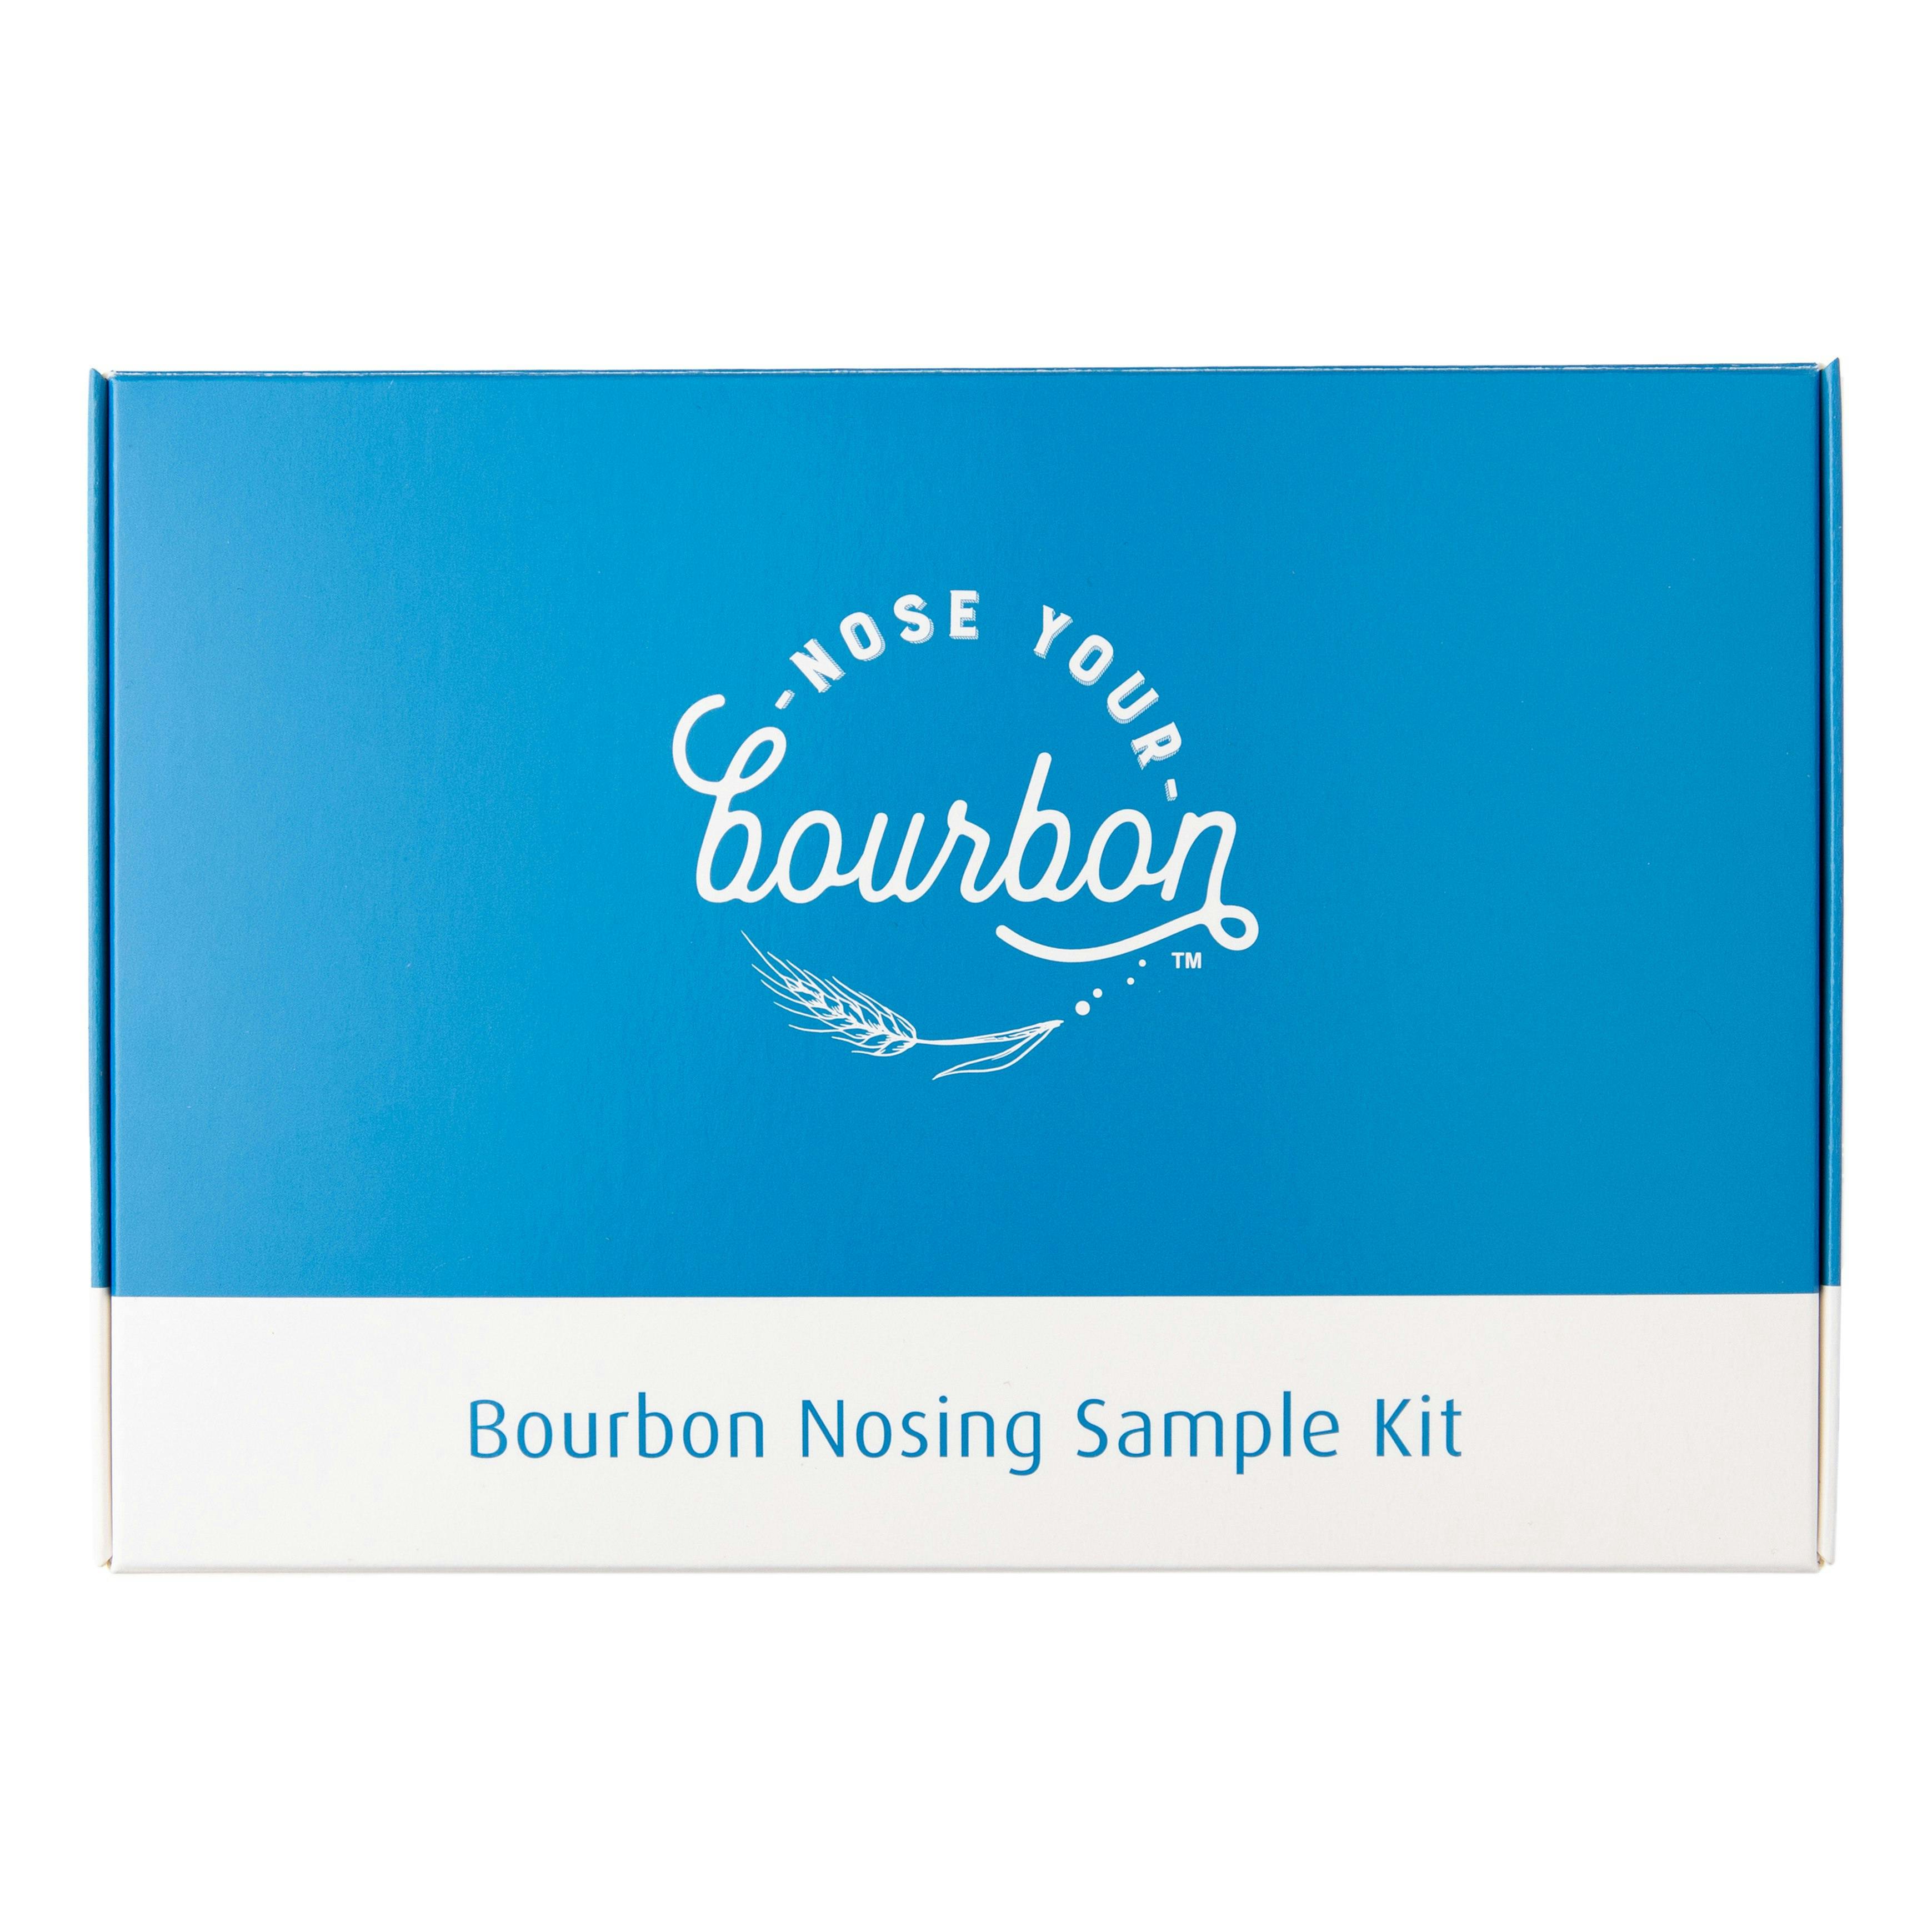 Bourbon Nosing Sample Kit